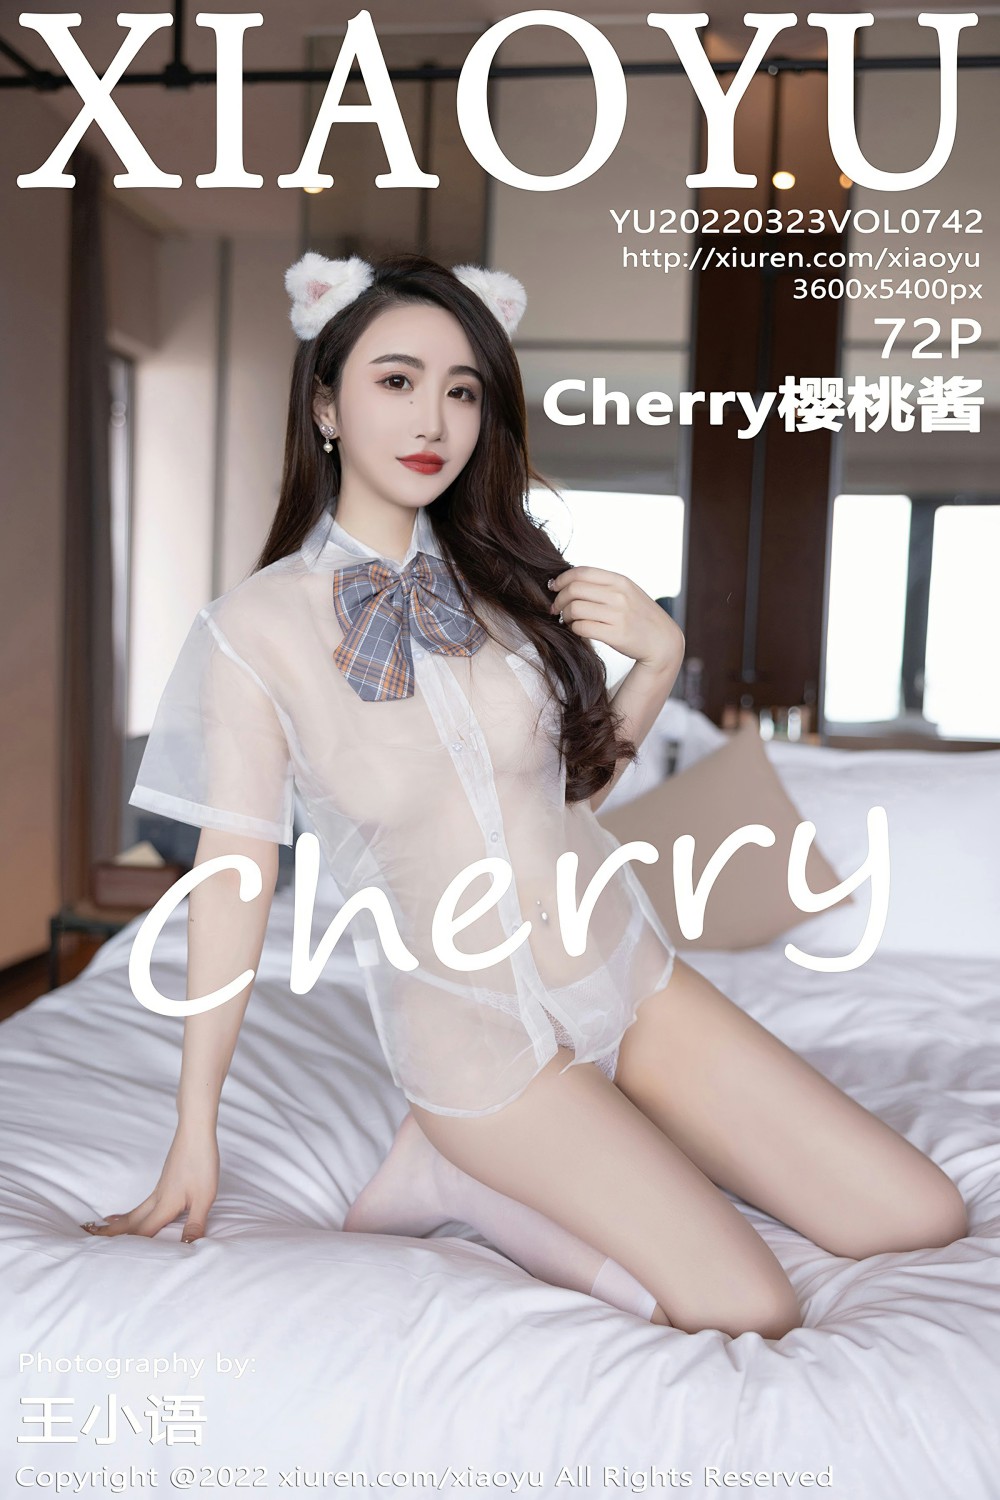 [XIAOYU语画界] 2022.03.23 VOL.742 Cherry樱桃酱 白色丝袜 第1张